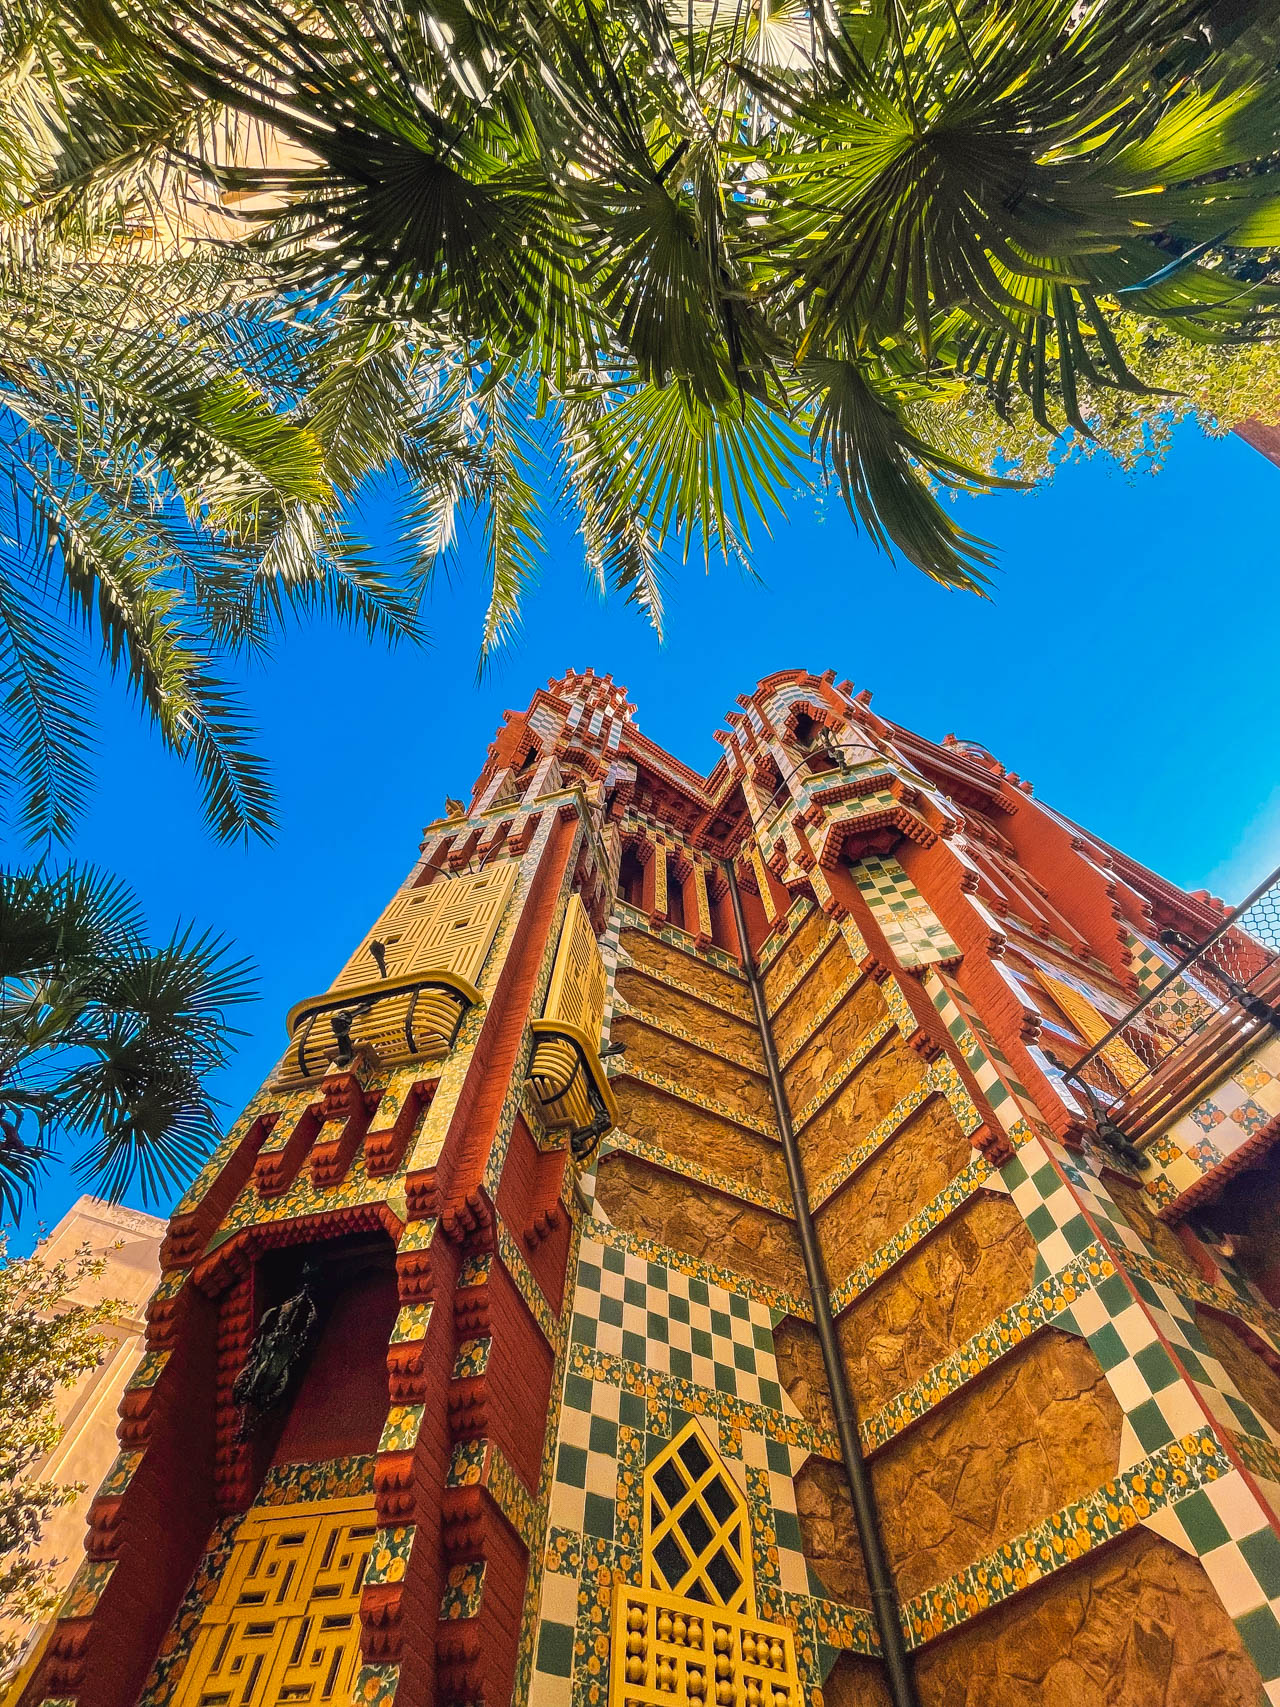 Dom zaprojektowany przez Gaudiego | Atrakcje w Barcelonie